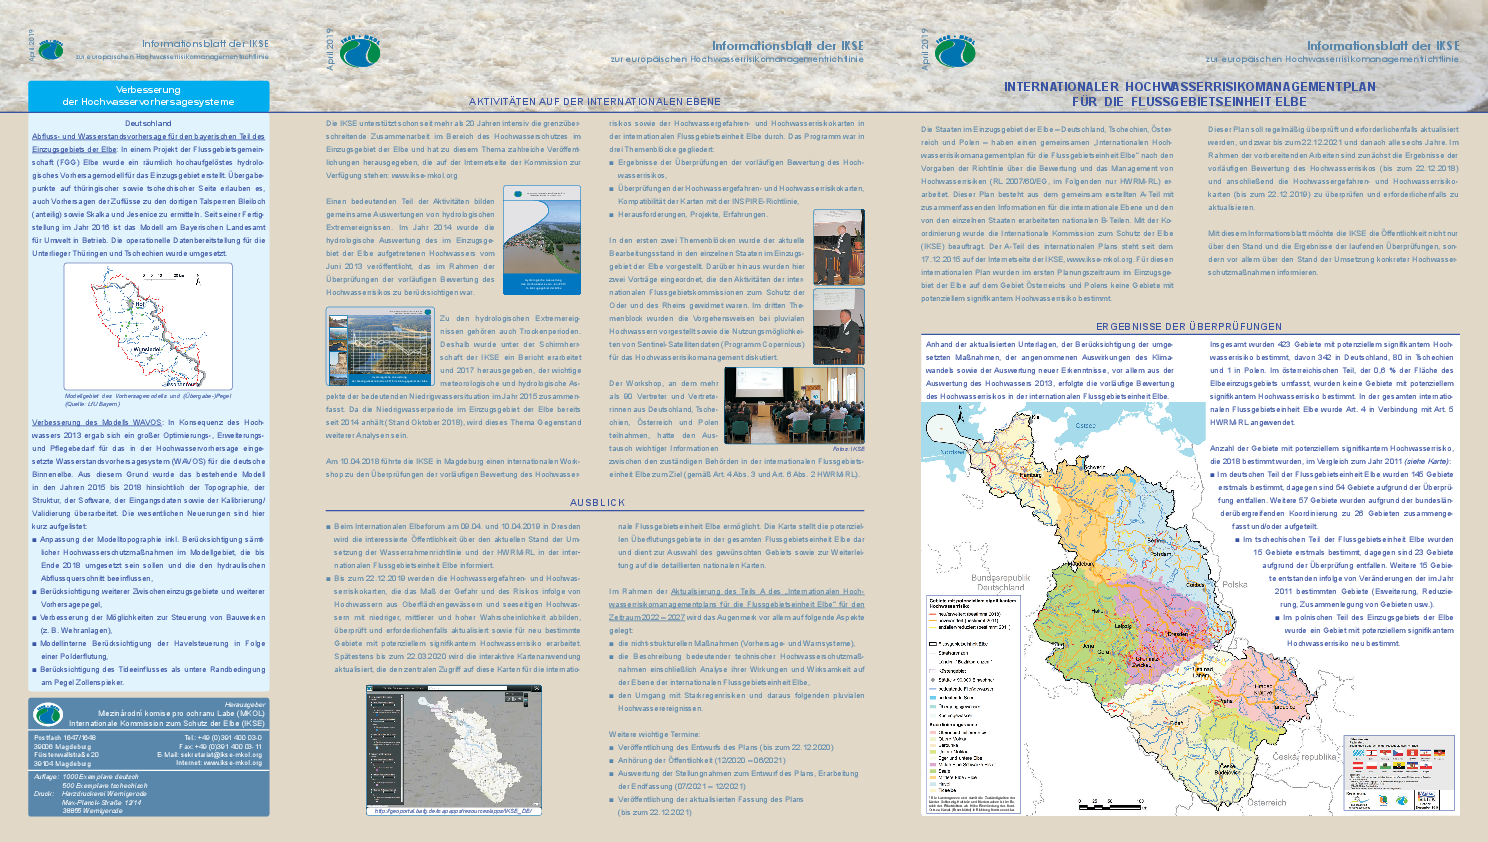 Informationsblatt der IKSE zur europäischen Hochwasserrisikomanagementrichtlinie - April 2019, Internationaler Hochwasserrisikomanagementplan für die Flussgebietseinheit Elbe